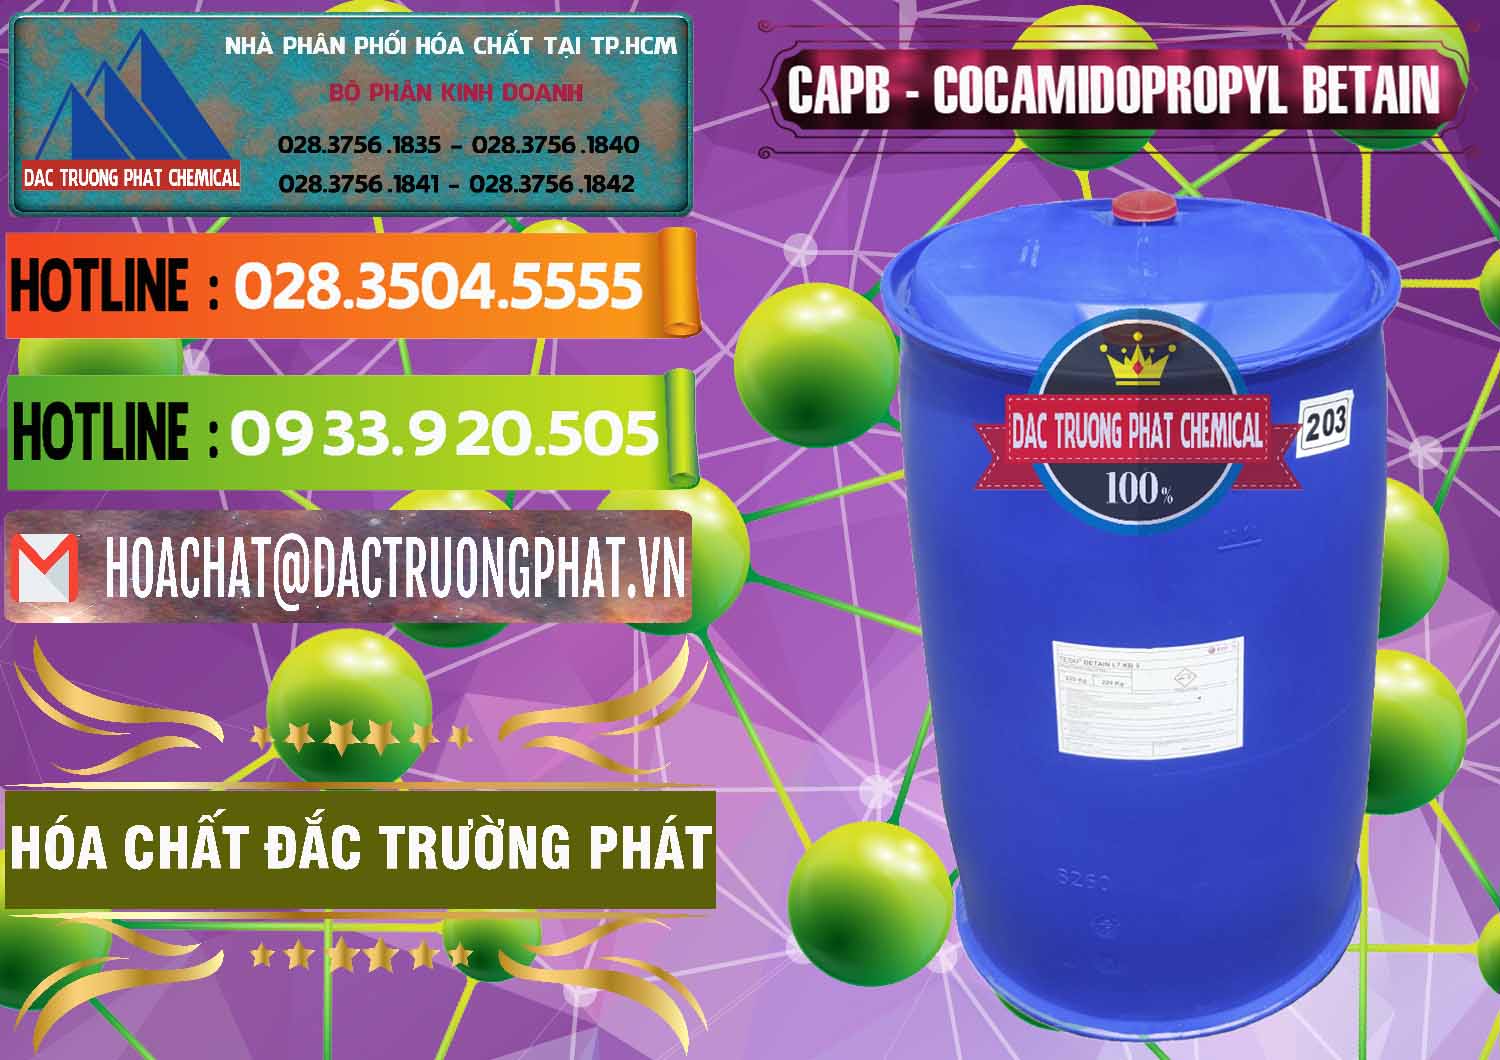 Nơi chuyên cung ứng ( bán ) Cocamidopropyl Betaine - CAPB Tego Indonesia - 0327 - Nơi chuyên bán - cung cấp hóa chất tại TP.HCM - cungcaphoachat.com.vn